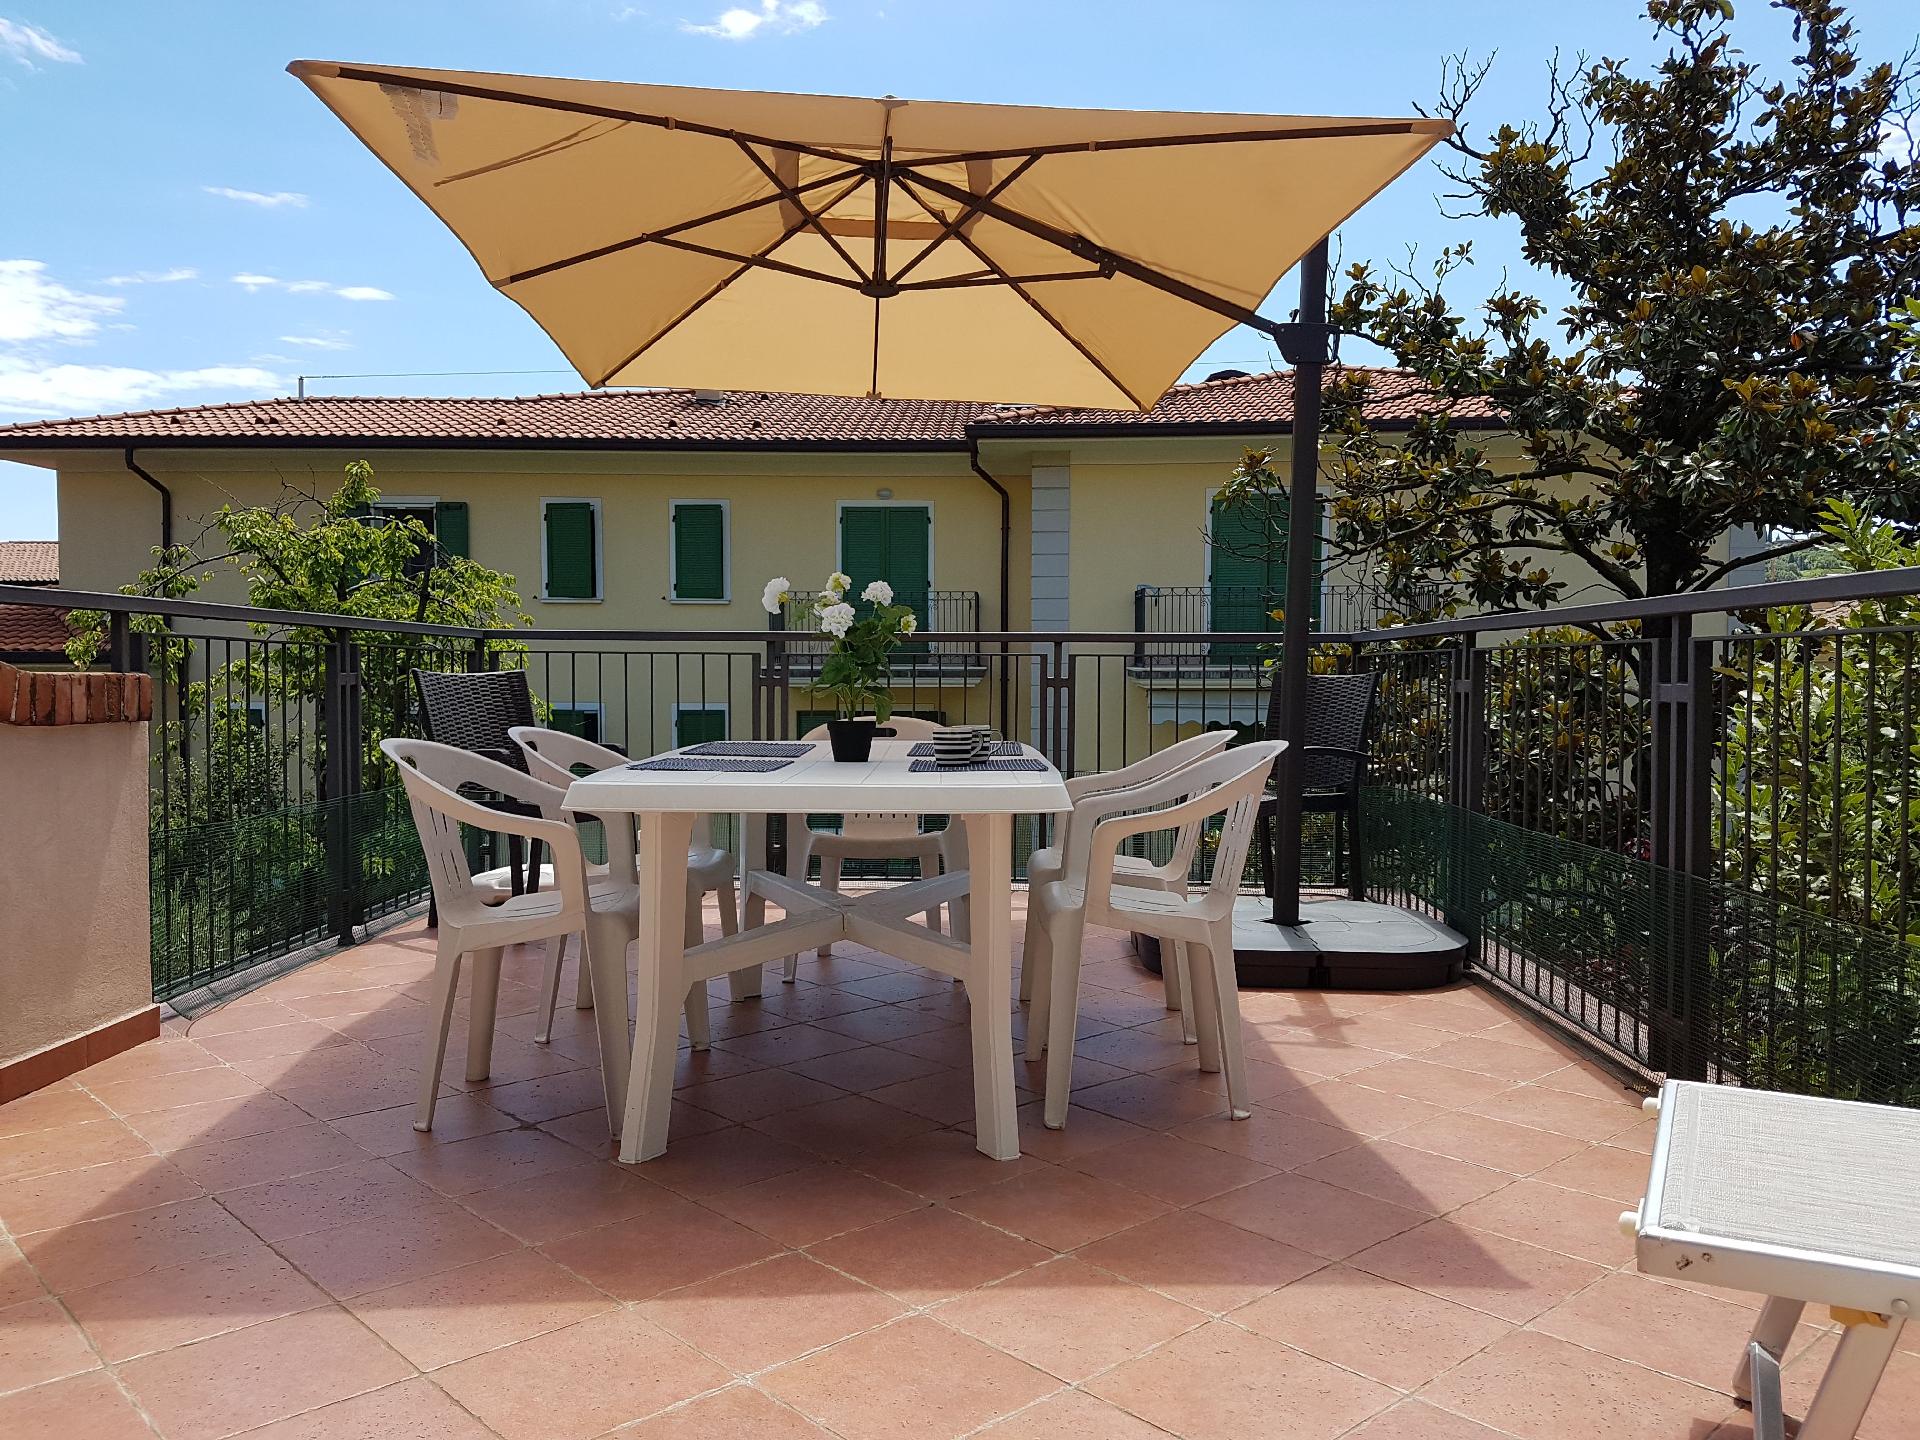 Ferienwohnung für 4 Personen ca. 90 m² i Ferienhaus in Italien